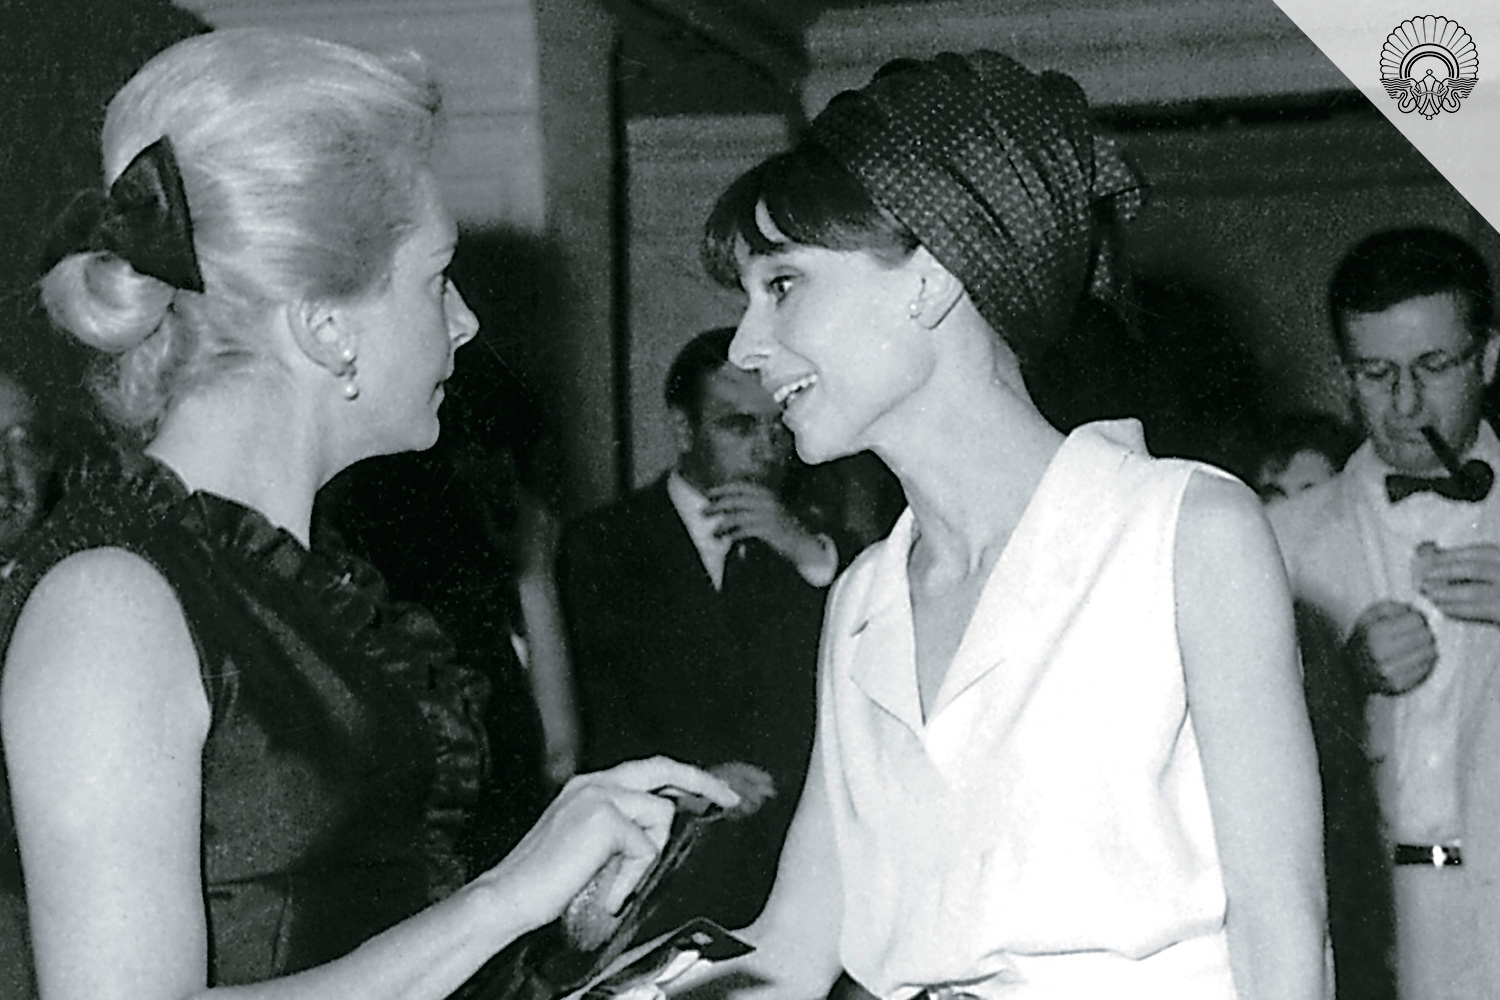 El saludo entre Deborah Kerr y Audrey Hepburn, un momento emblemático